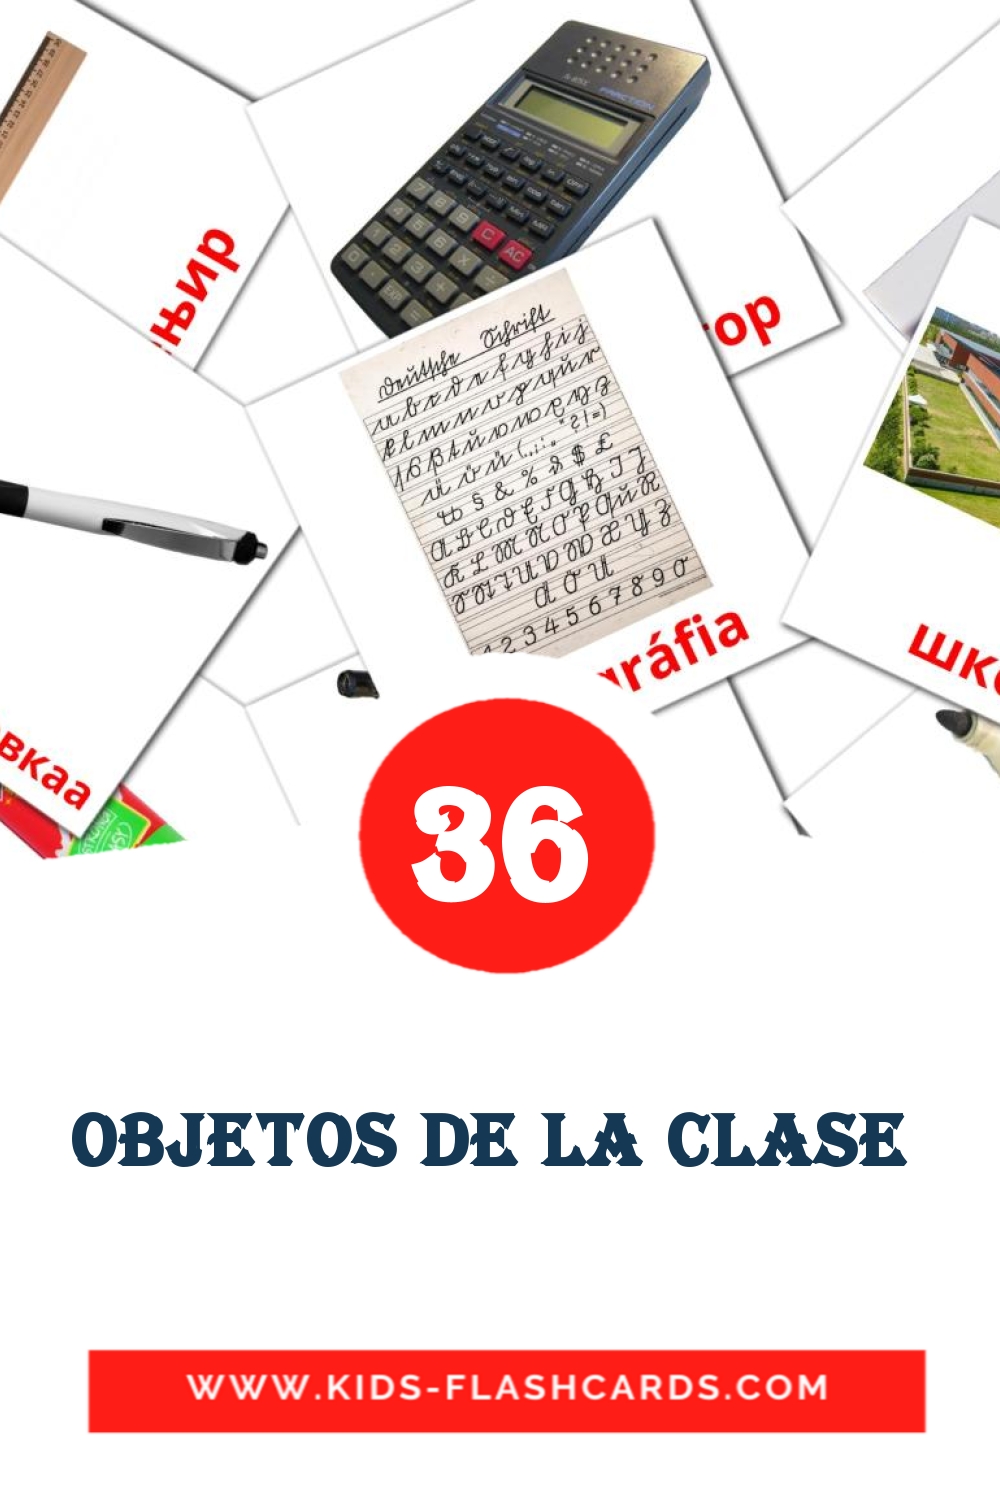 36 objetos de la clase  Bildkarten für den Kindergarten auf Amharische